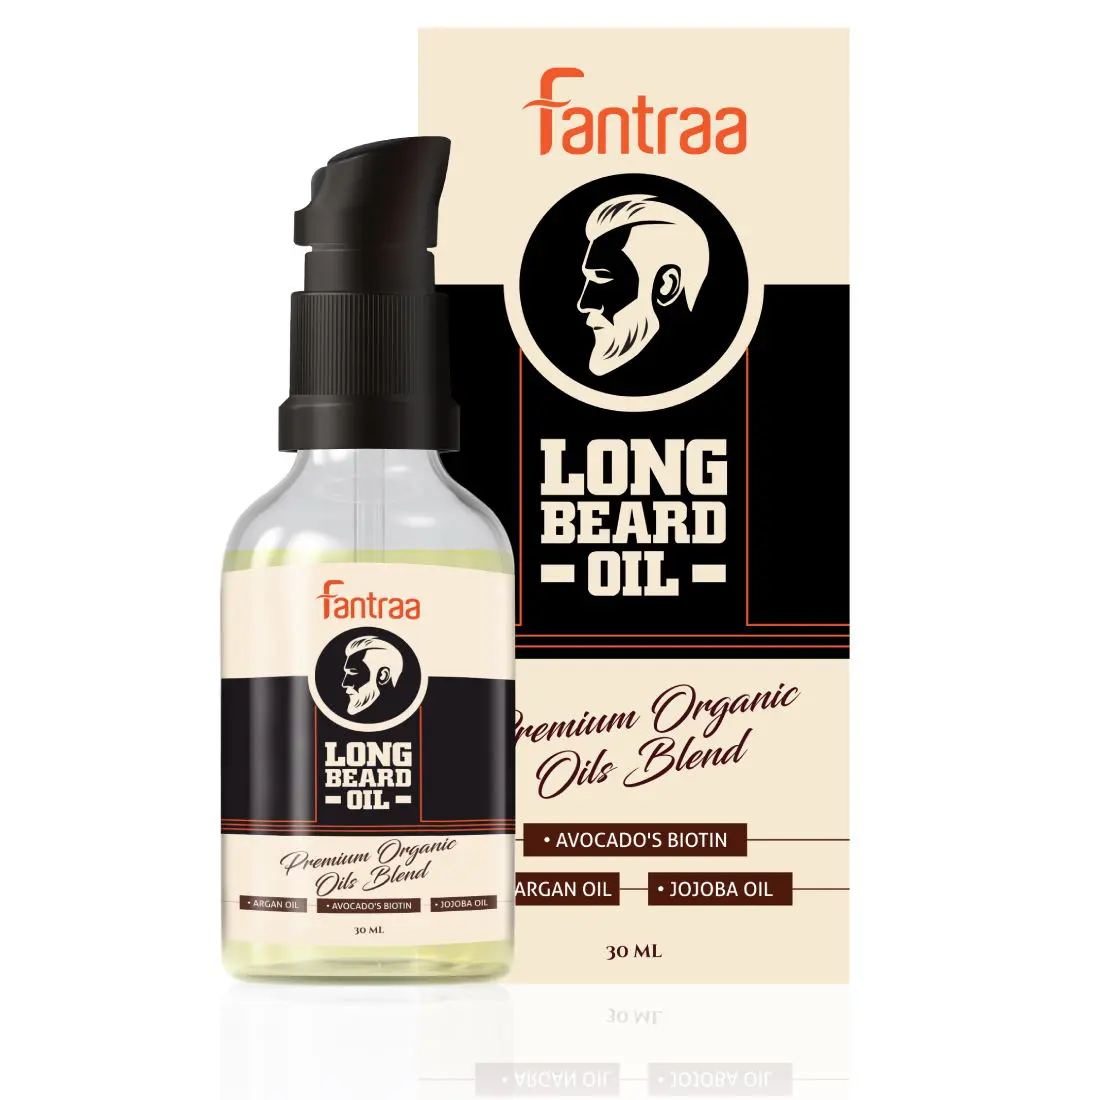 Fantraa Long Beard Oil Enrich With Argan Oil (30 ml)